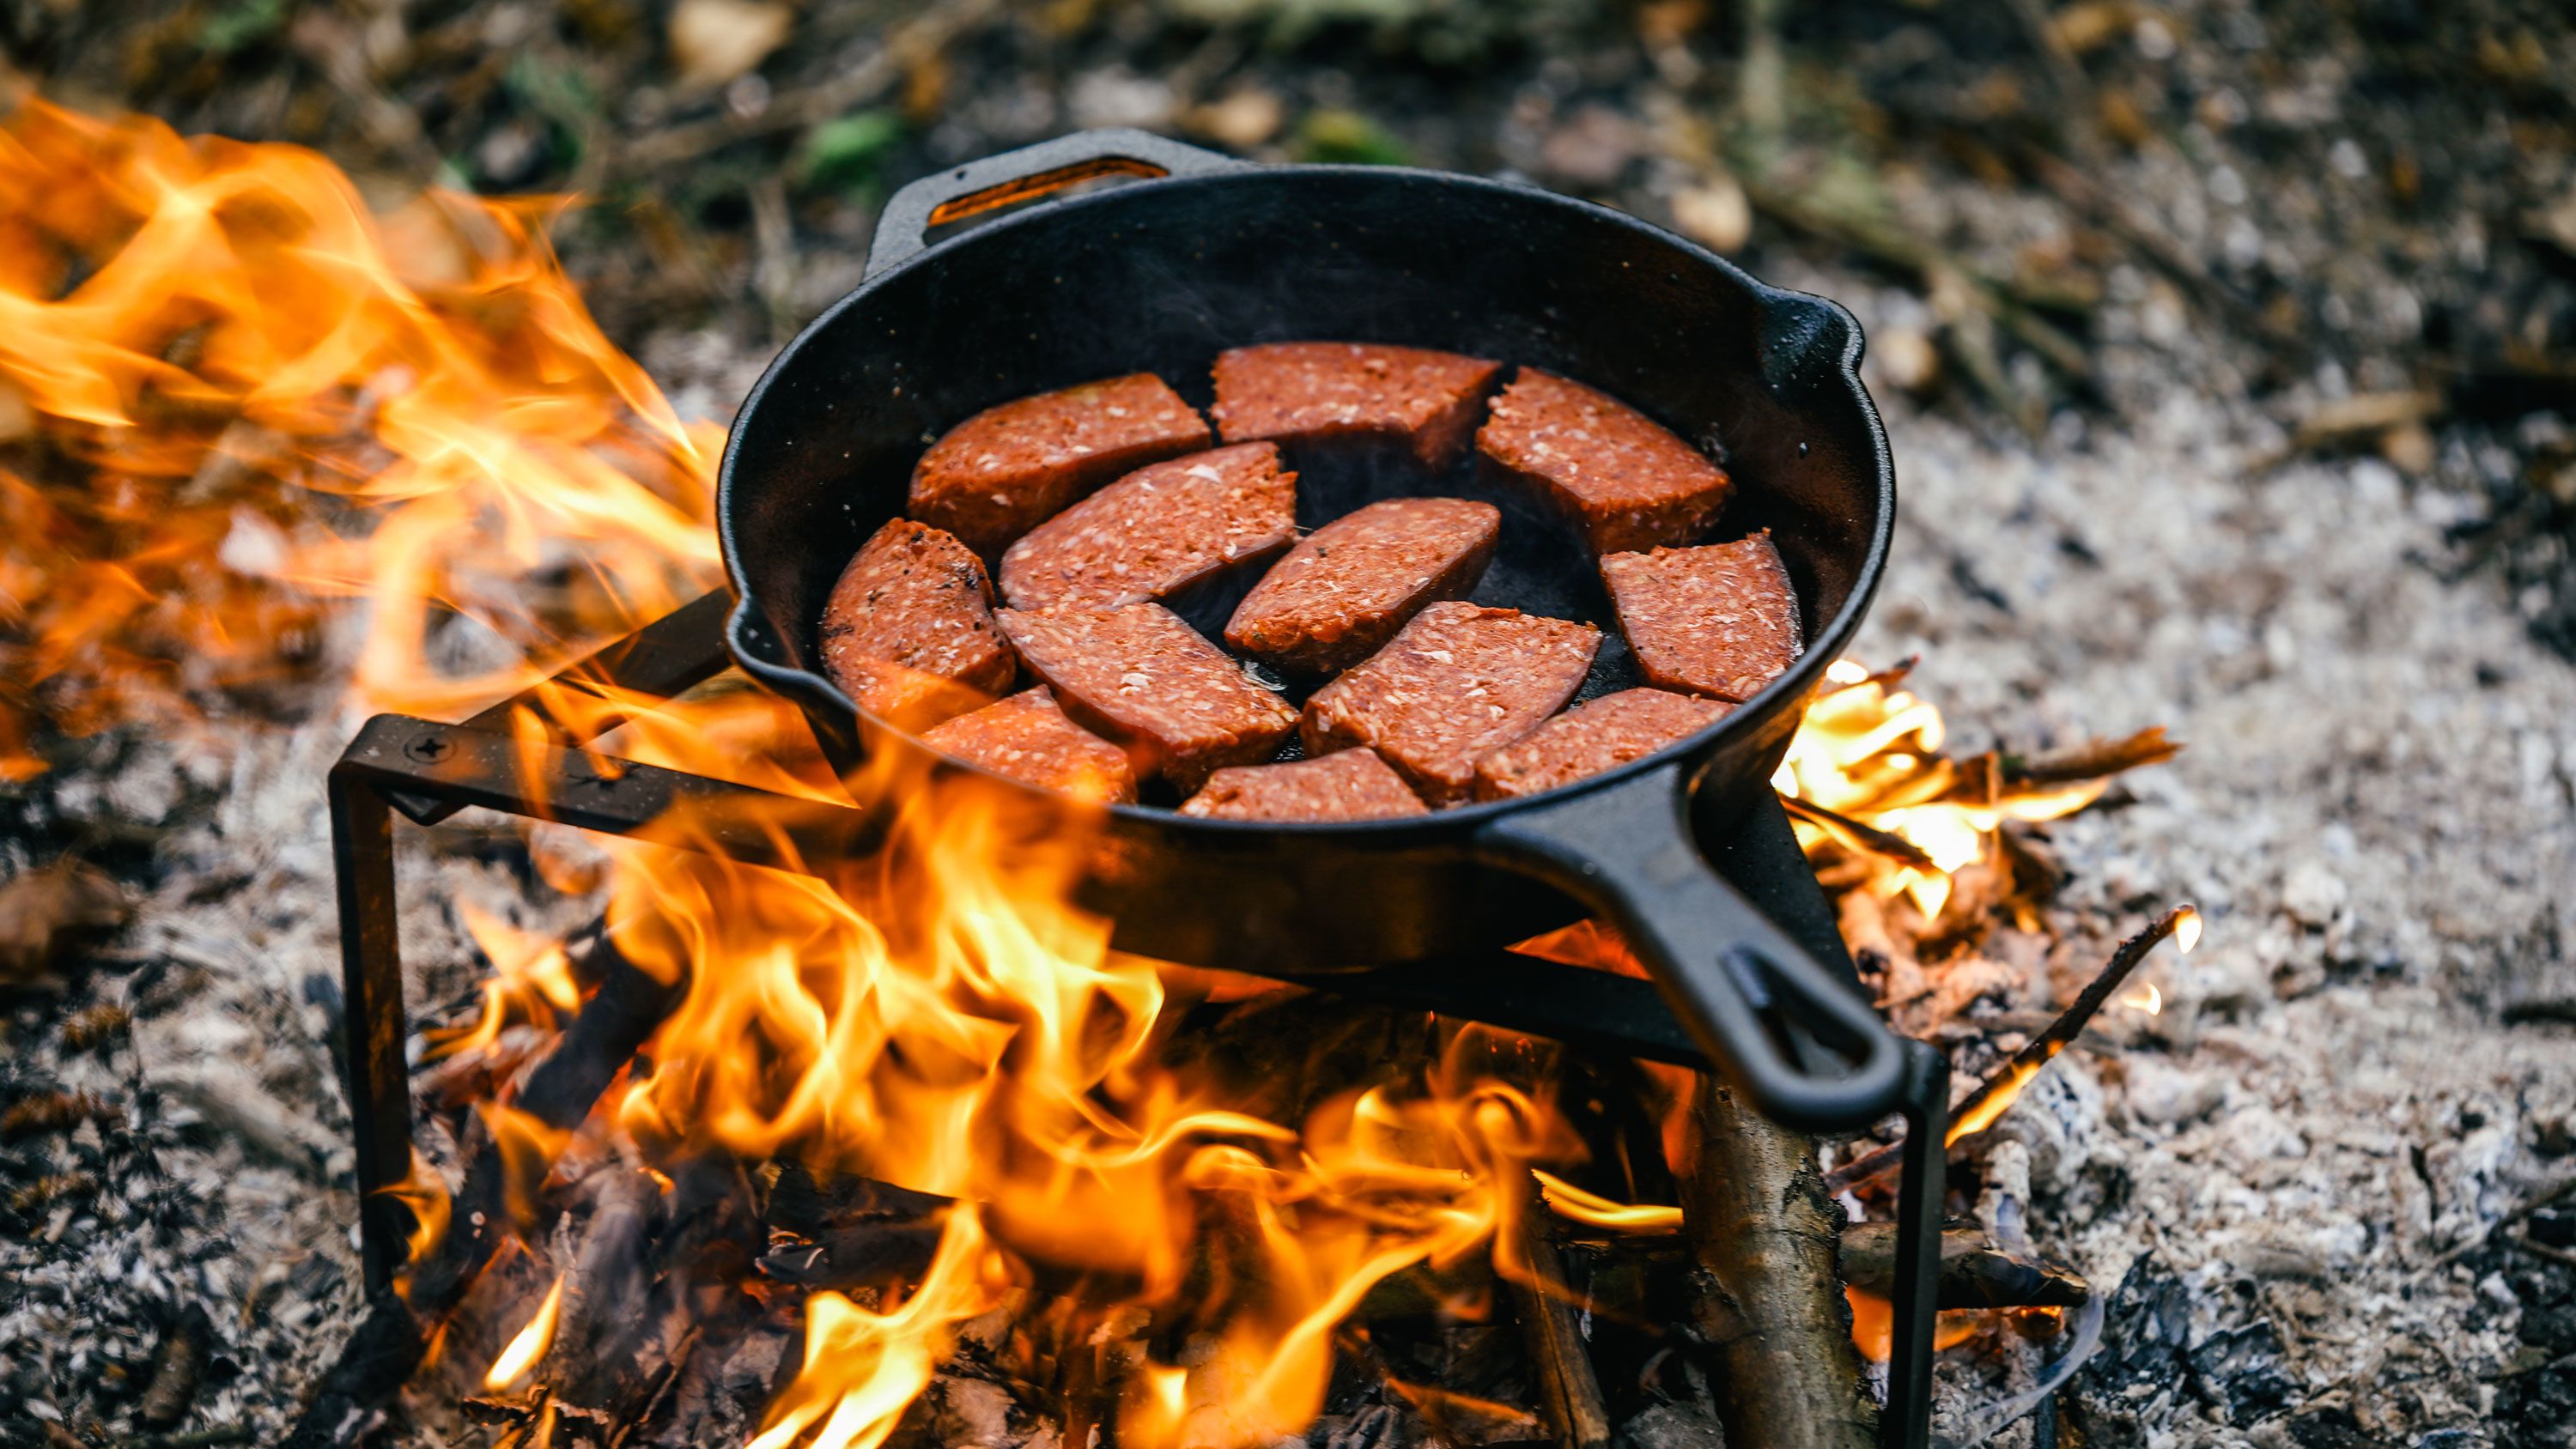 https://media.cnn.com/api/v1/images/stellar/prod/230627220825-01-summer-campfire-cooking-grill-recipe-wellness-restricted.jpg?c=original